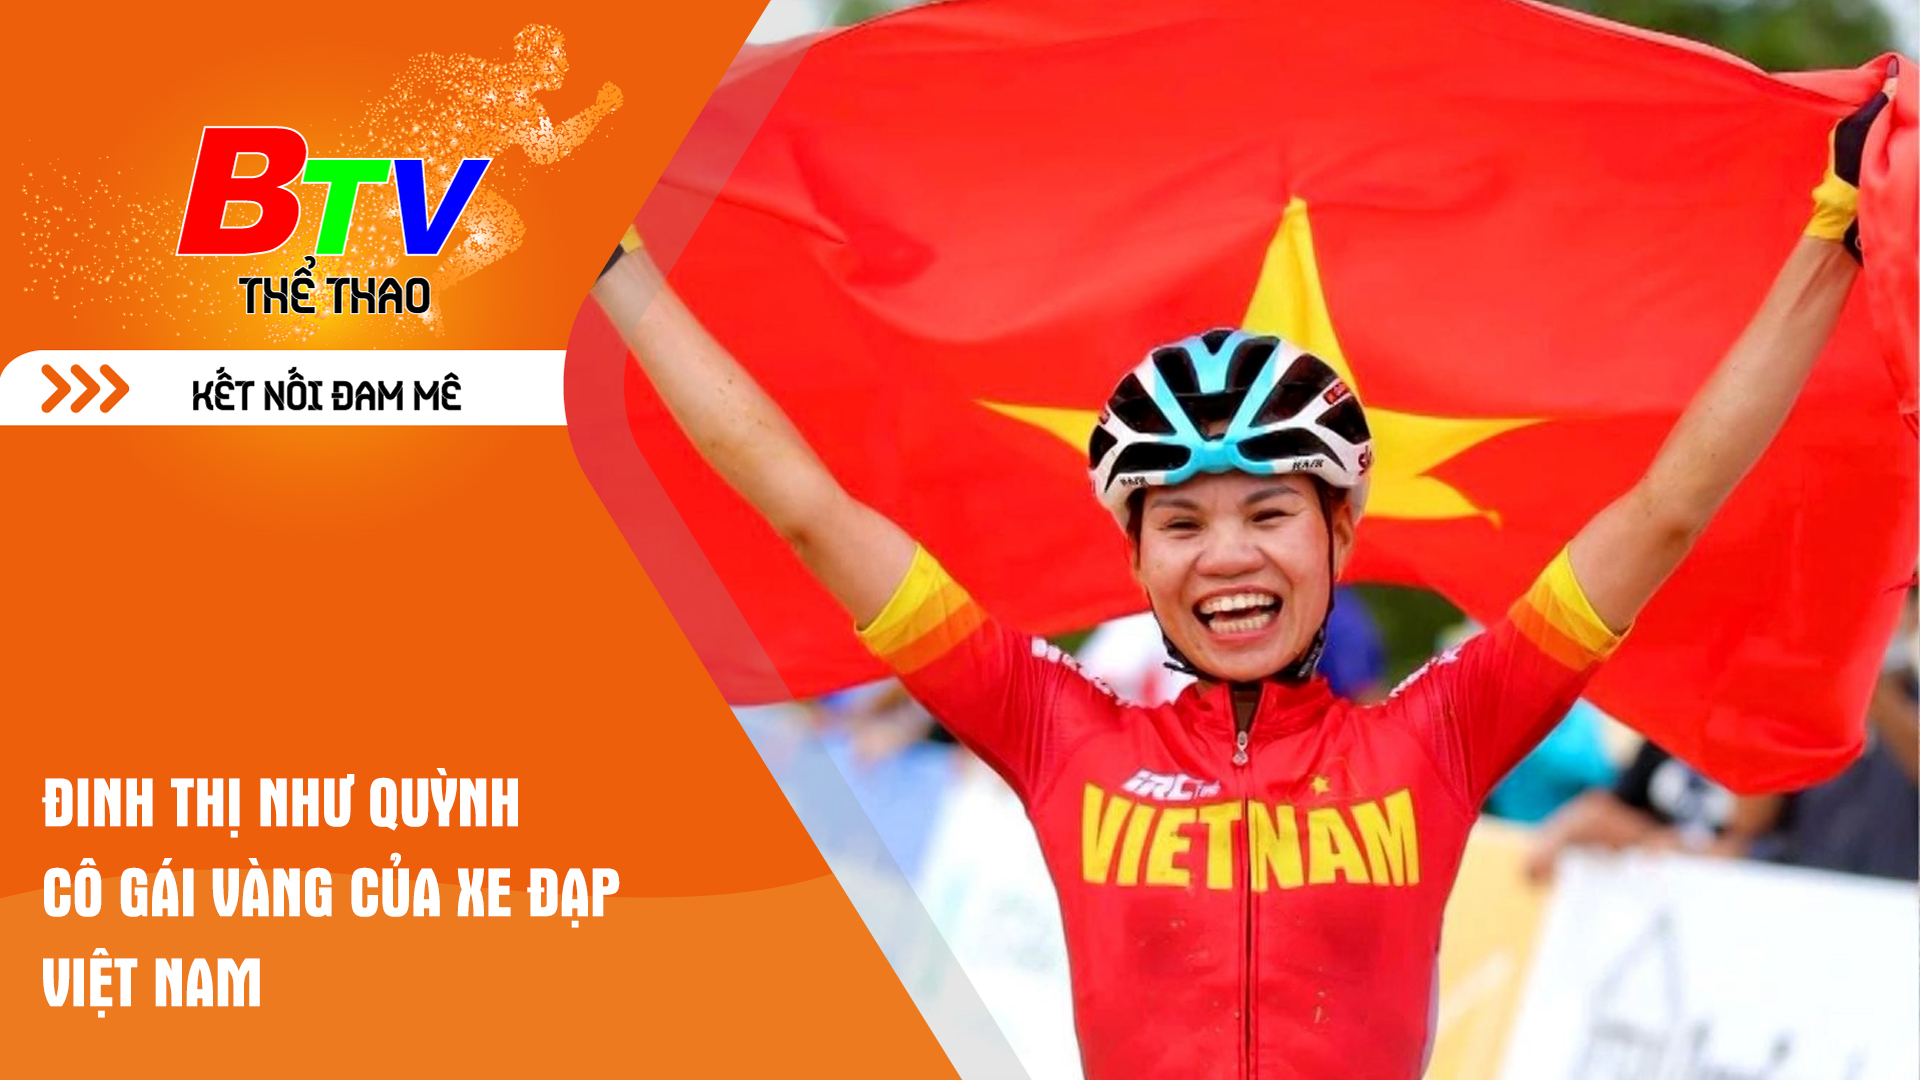 Đinh Thị Như Quỳnh - Cô gái Vàng của xe đạp Việt Nam